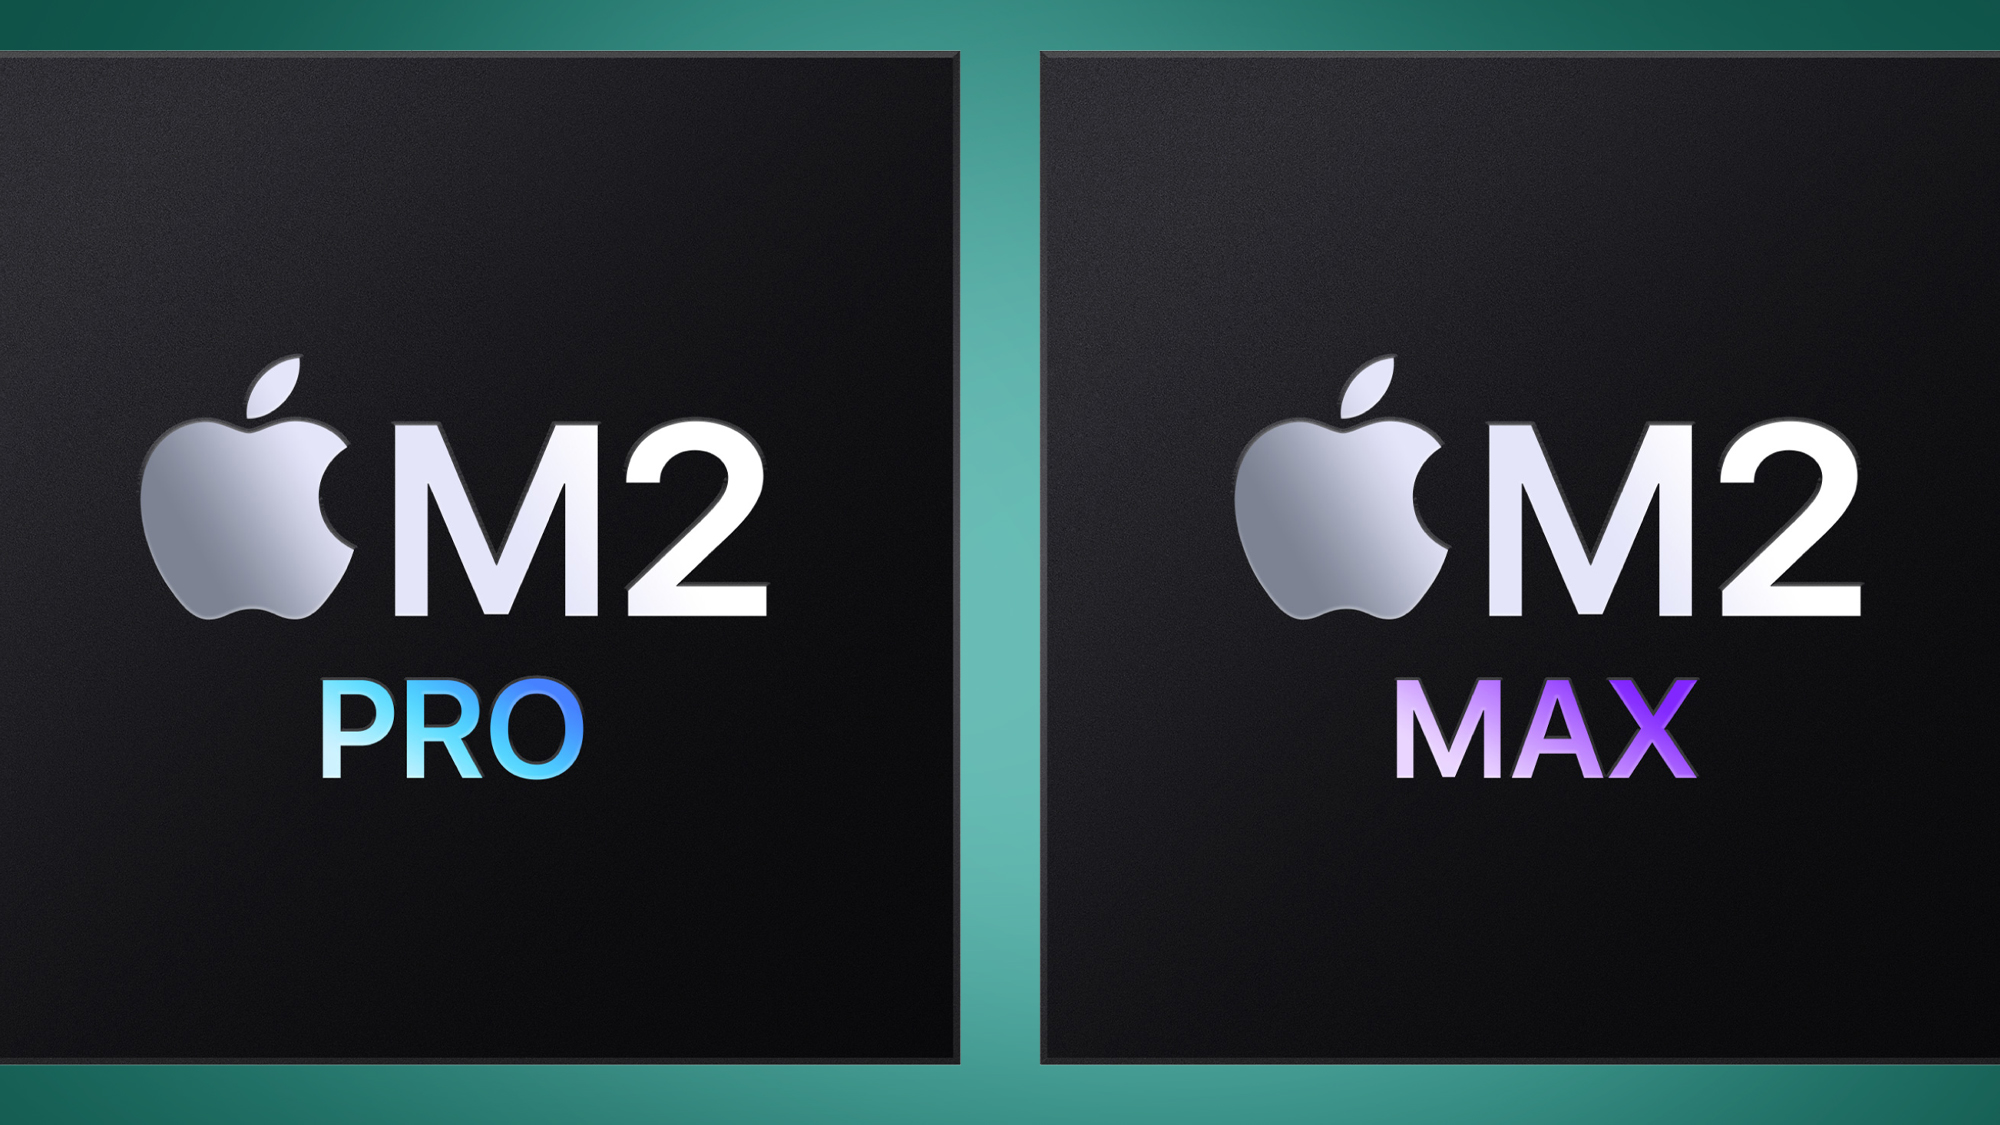 The Apple Чипы M2 Pro и M2 Max на зеленом фоне